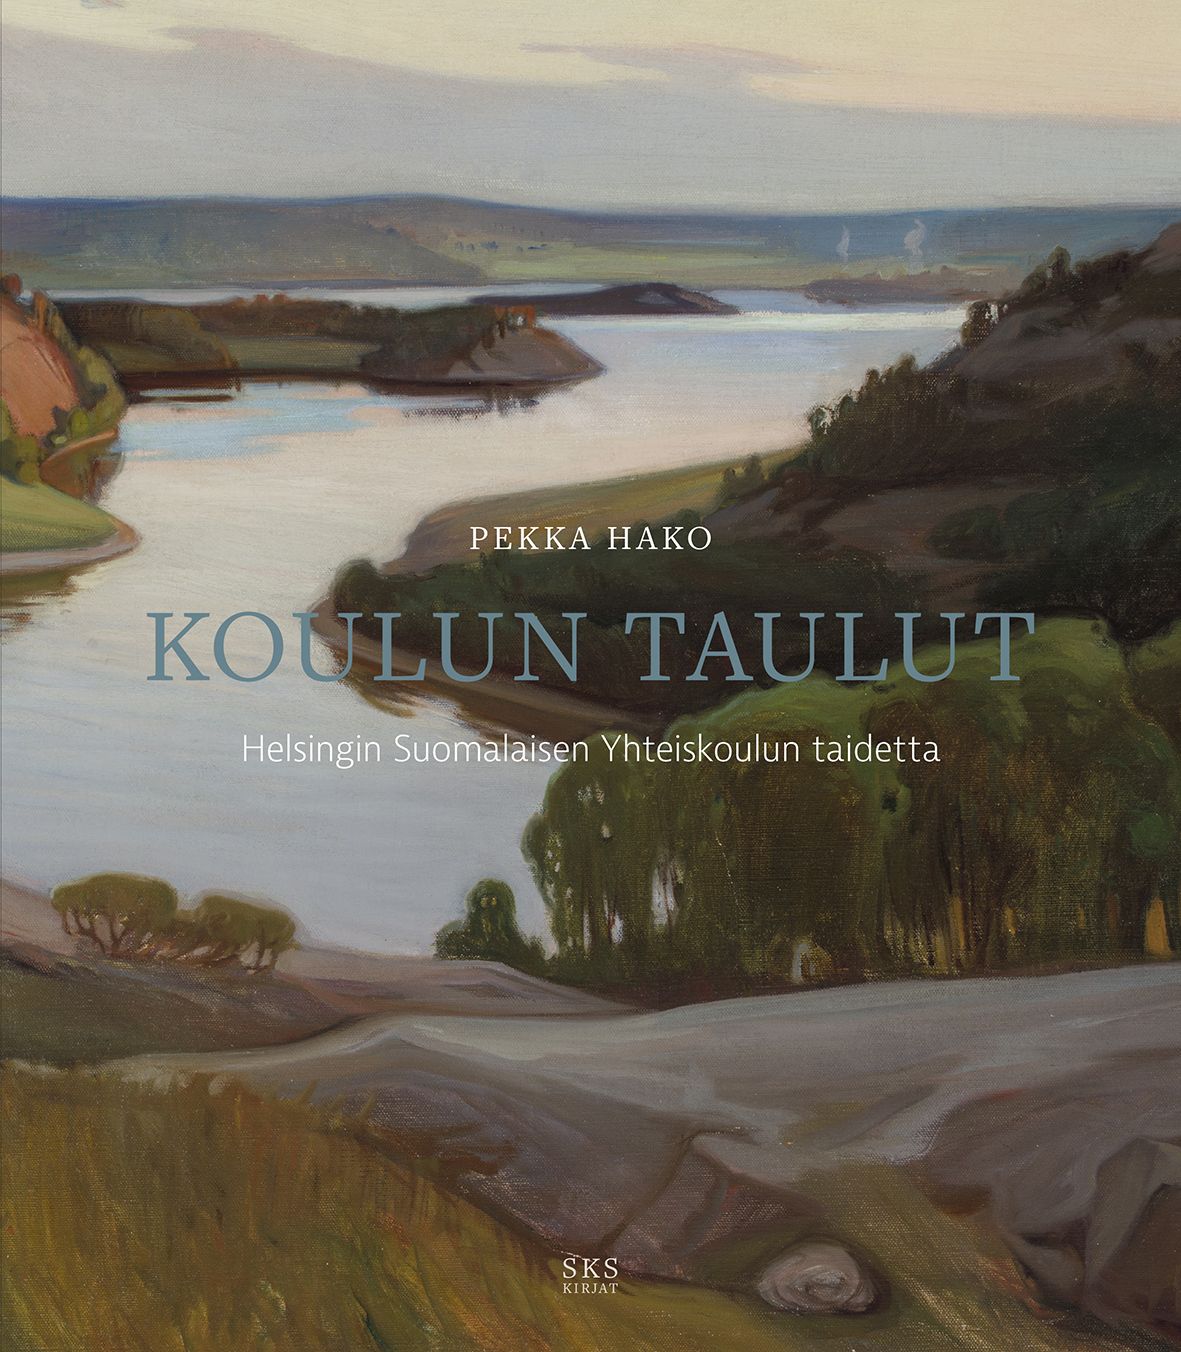 Pekka Hako : Koulun taulut